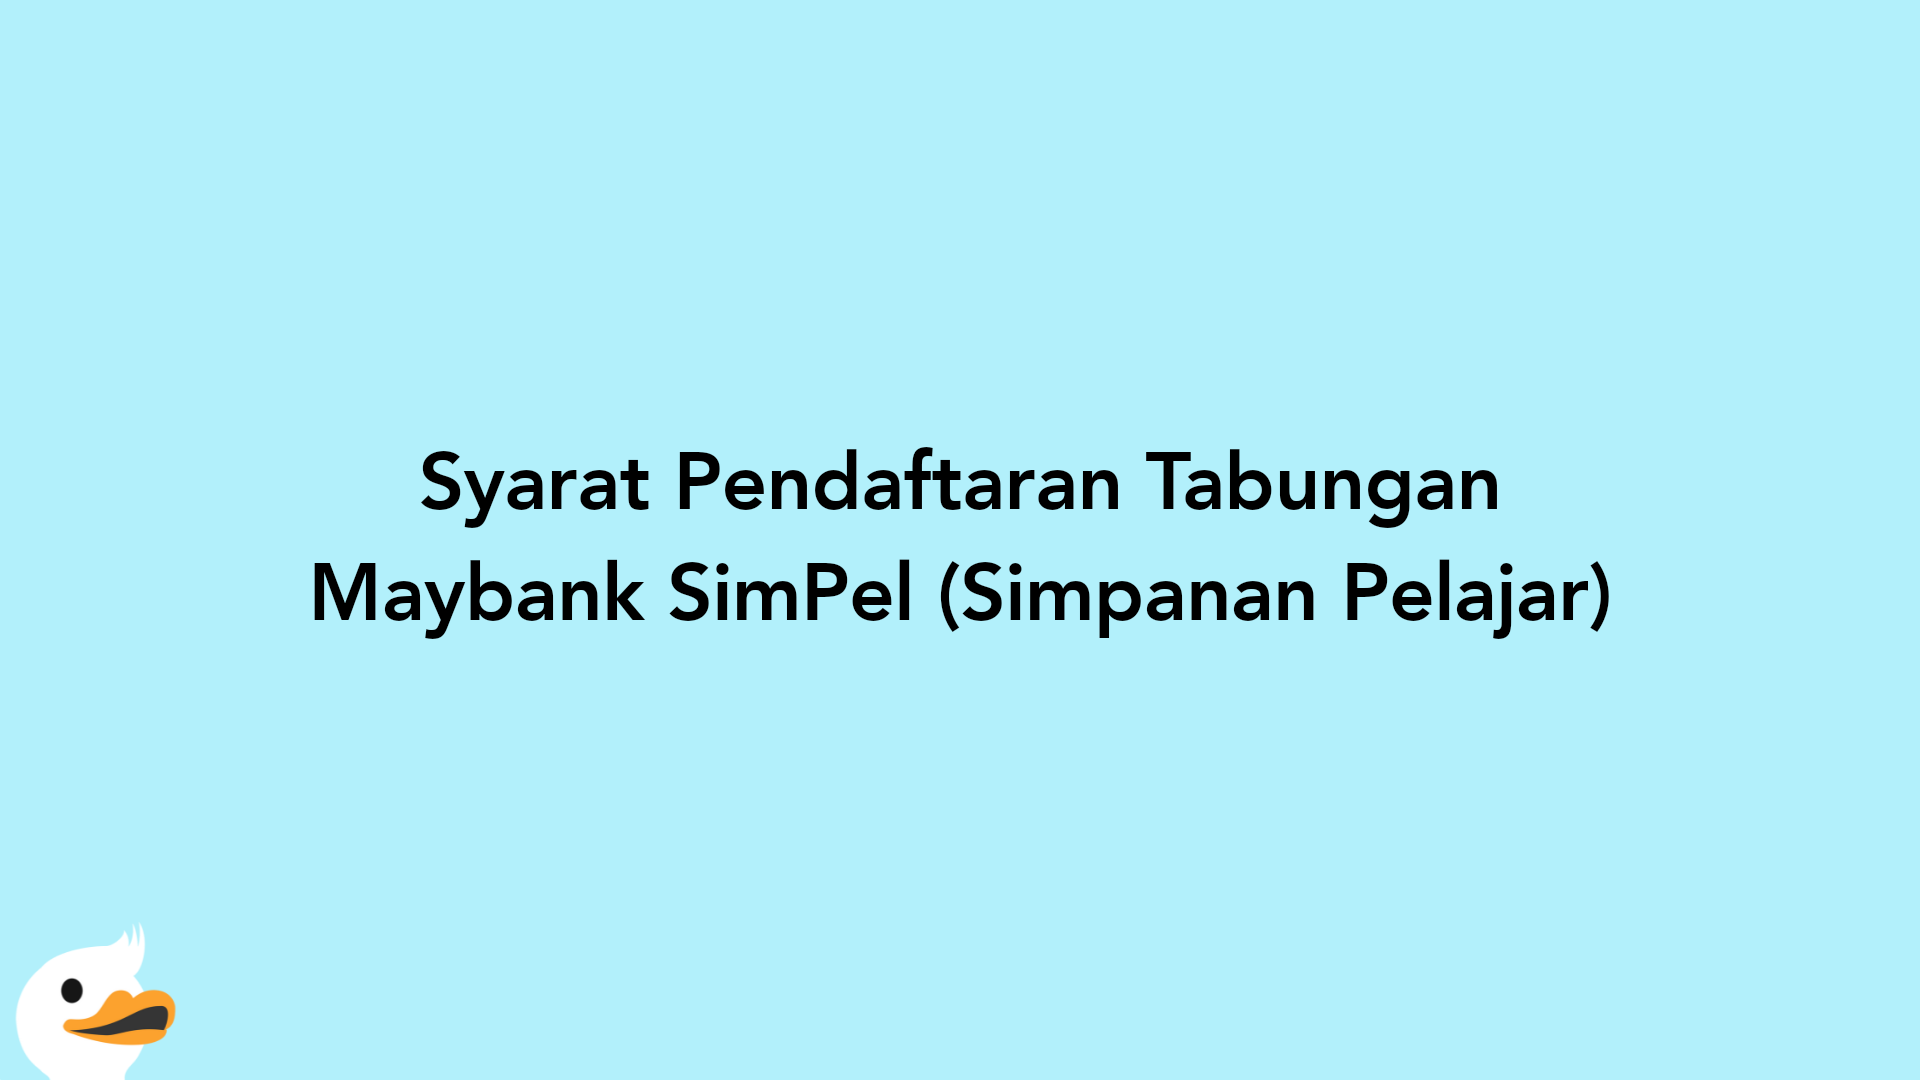 Syarat Pendaftaran Tabungan Maybank SimPel (Simpanan Pelajar)